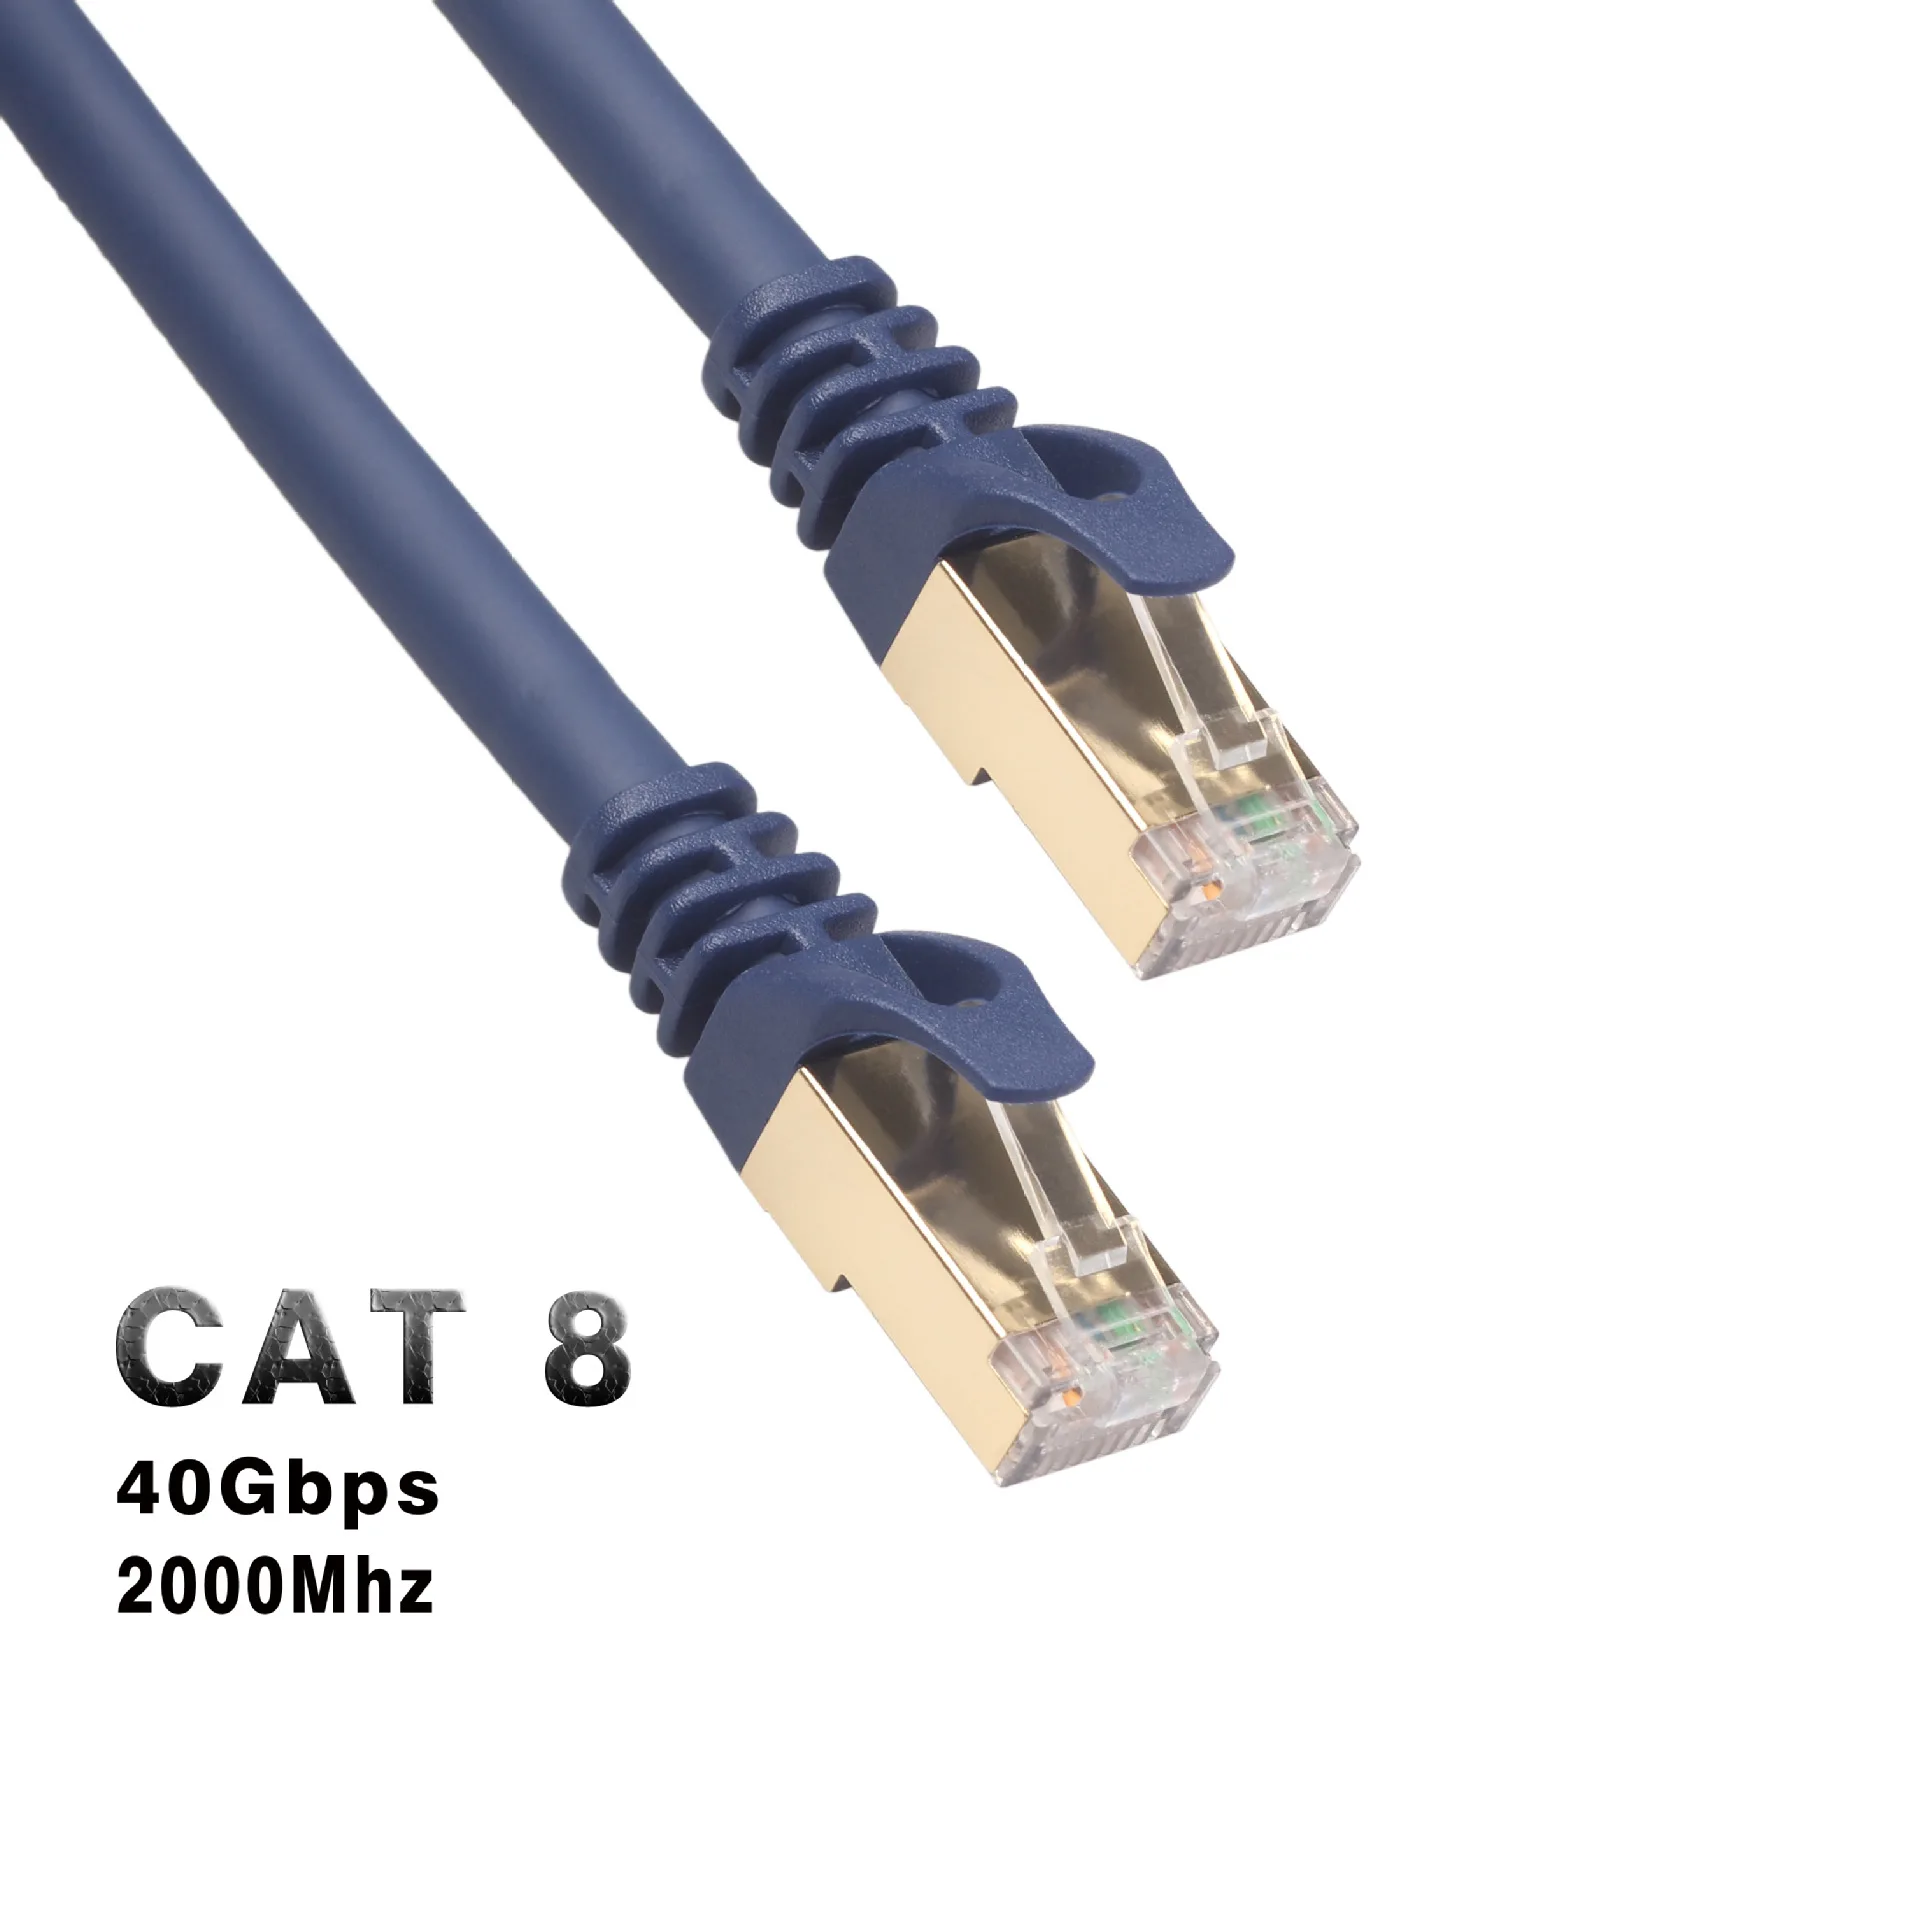 

31076 Ethernet кабель Kat 8 RJ45 40 Гбит/с 2000 МГц 10 м 15 м 20 м интернет-сеть кабель Патч Lan ноутбуки Ps 4 маршрутизатор модем ПК